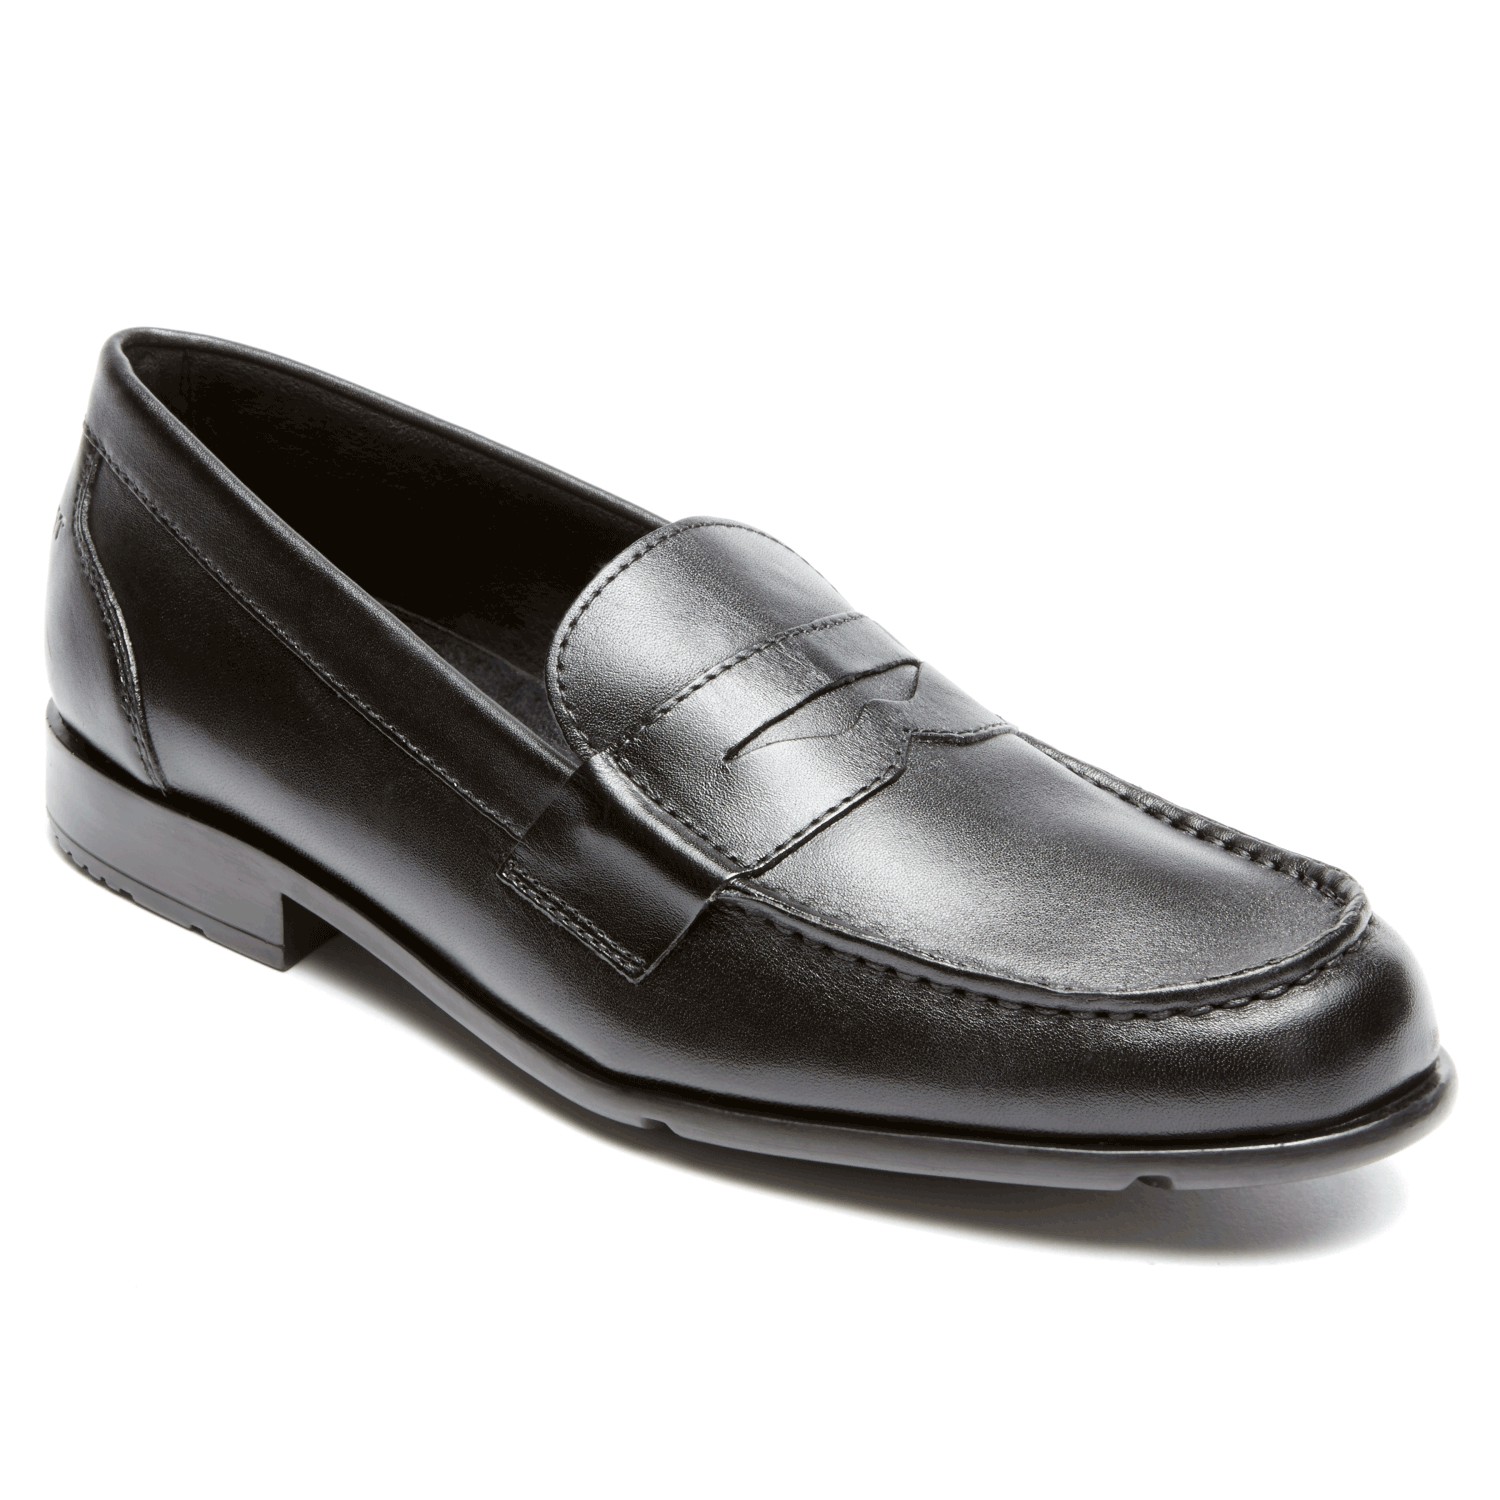 rockport men's dress shoes black